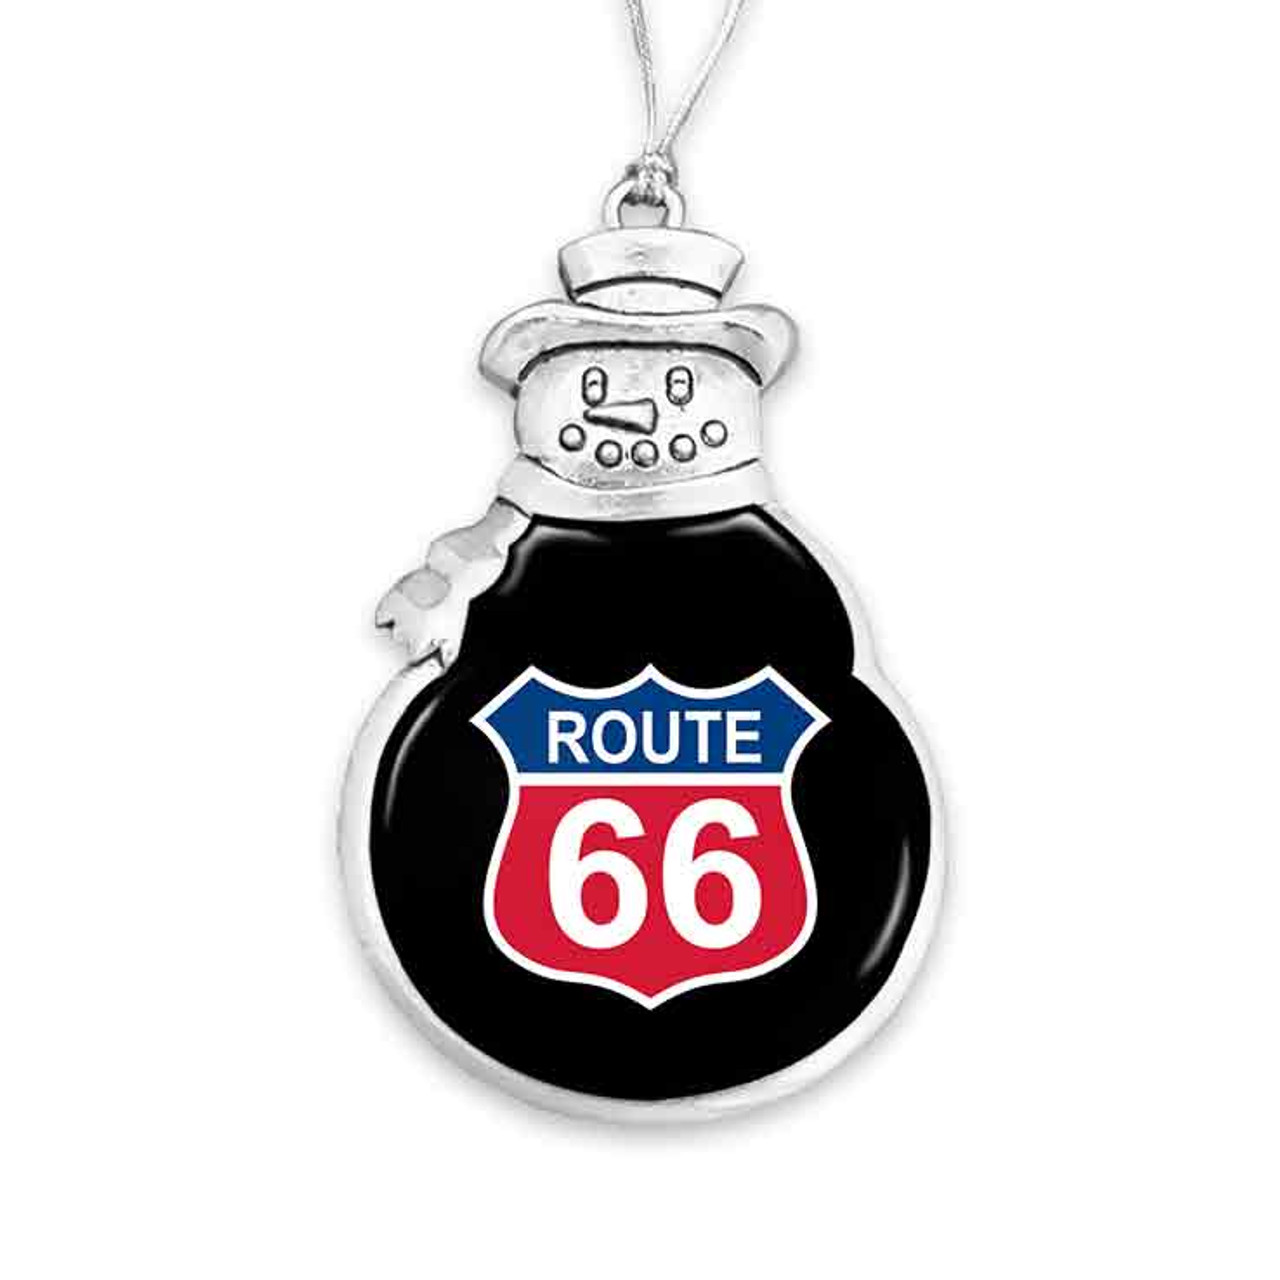 Route 66 Snowman Ornament